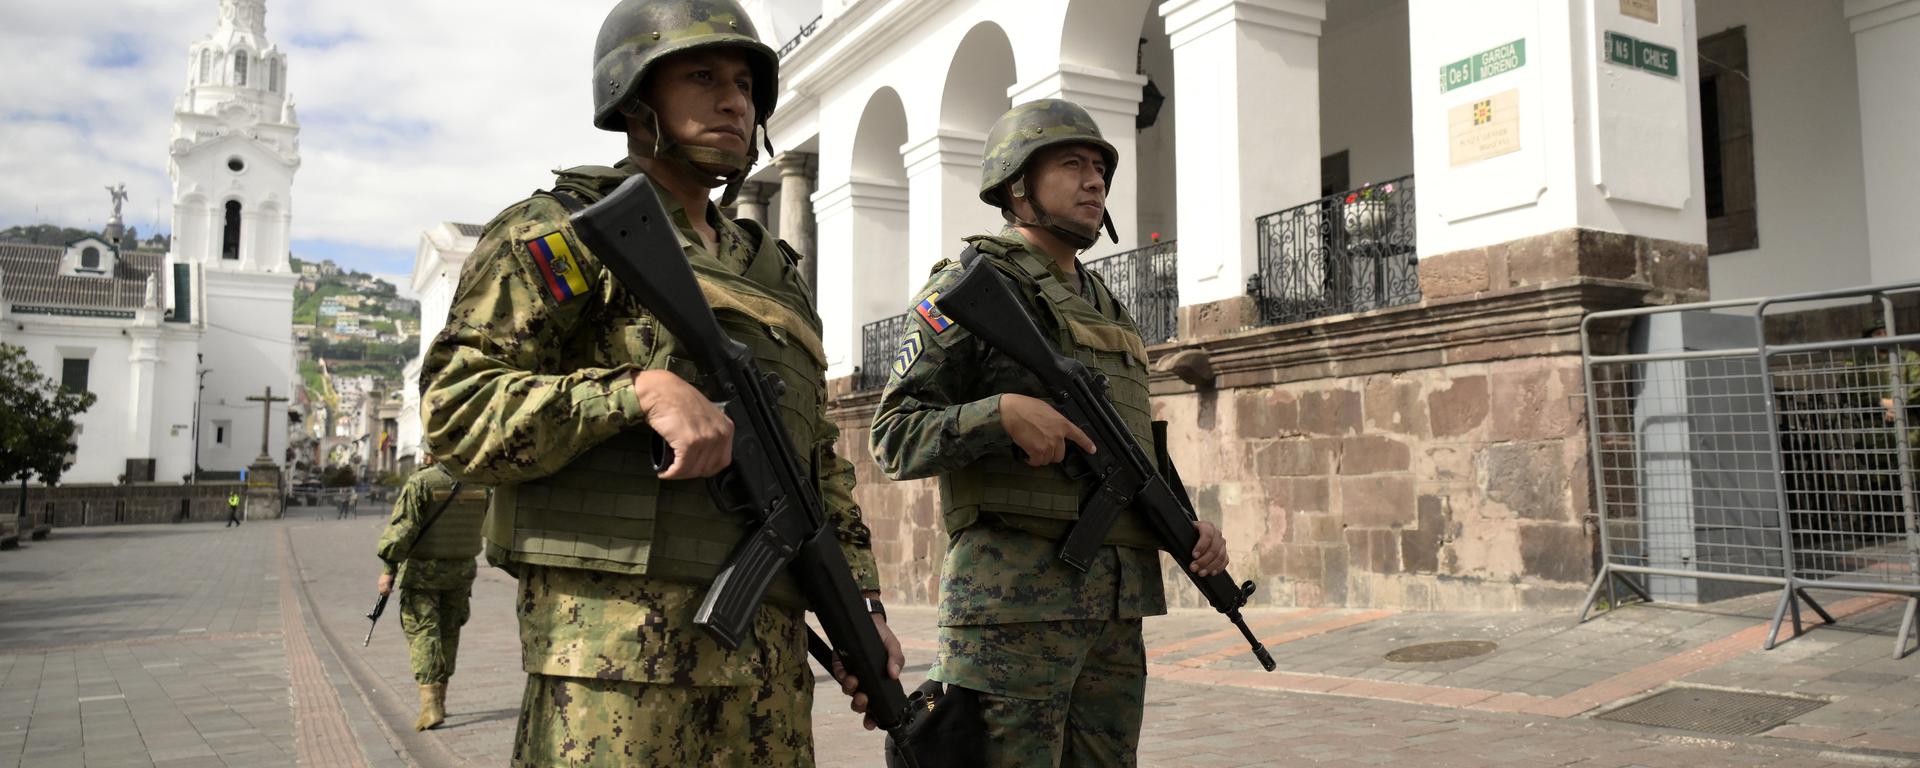 Crisis en Ecuador: “Los delincuentes van a buscar replegarse y el destino lógico son los países más cercanos”